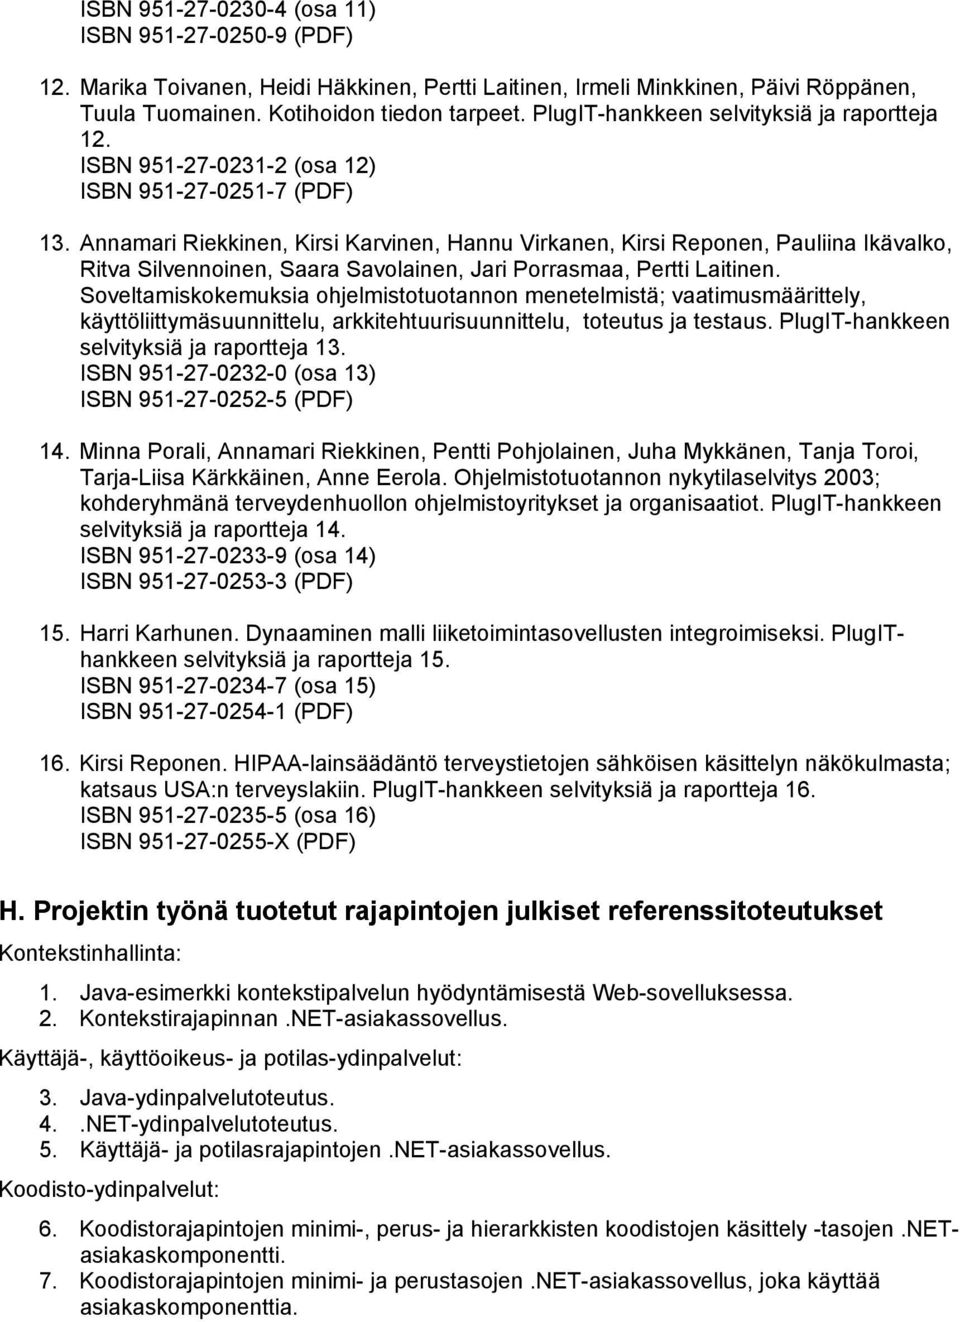 Annamari Riekkinen, Kirsi Karvinen, Hannu Virkanen, Kirsi Reponen, Pauliina Ikävalko, Ritva Silvennoinen, Saara Savolainen, Jari Porrasmaa, Pertti Laitinen.